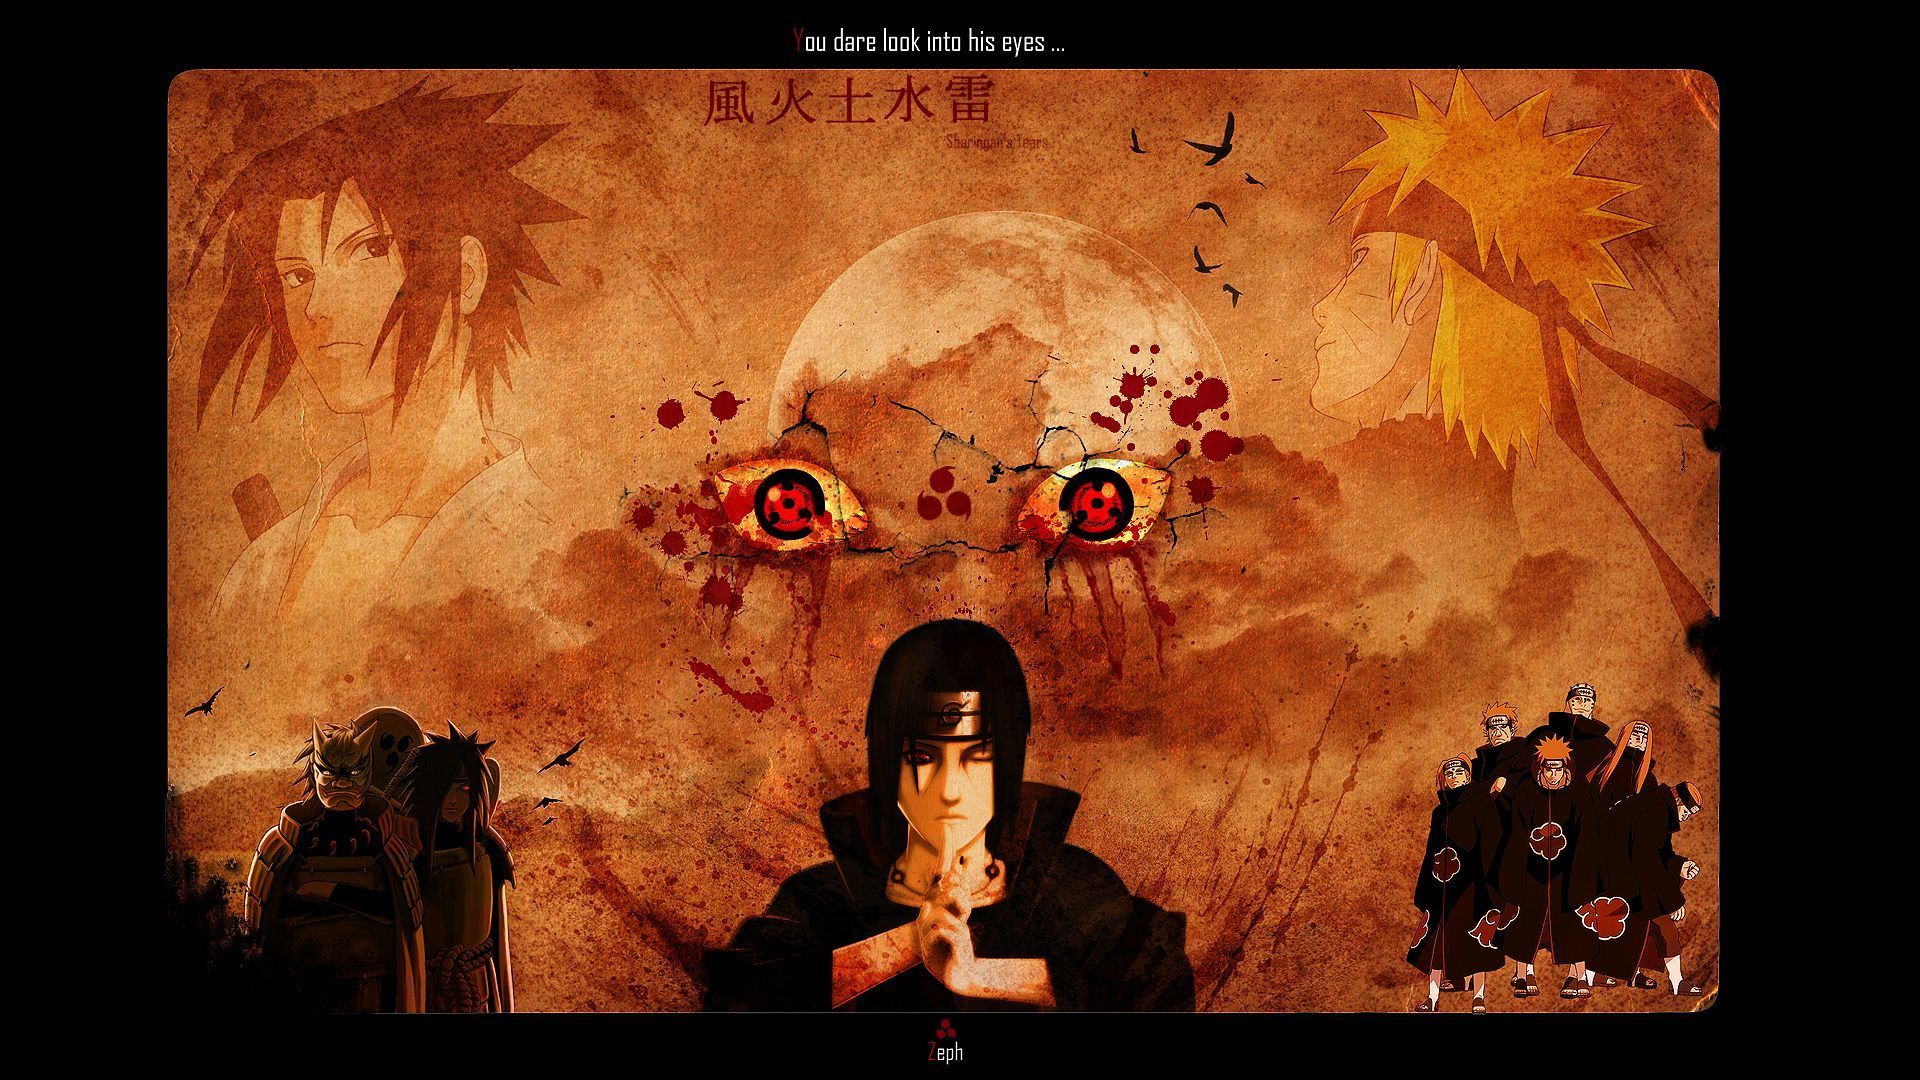 Naruto HD Wallpaper | 1920x1080 | ID:18395